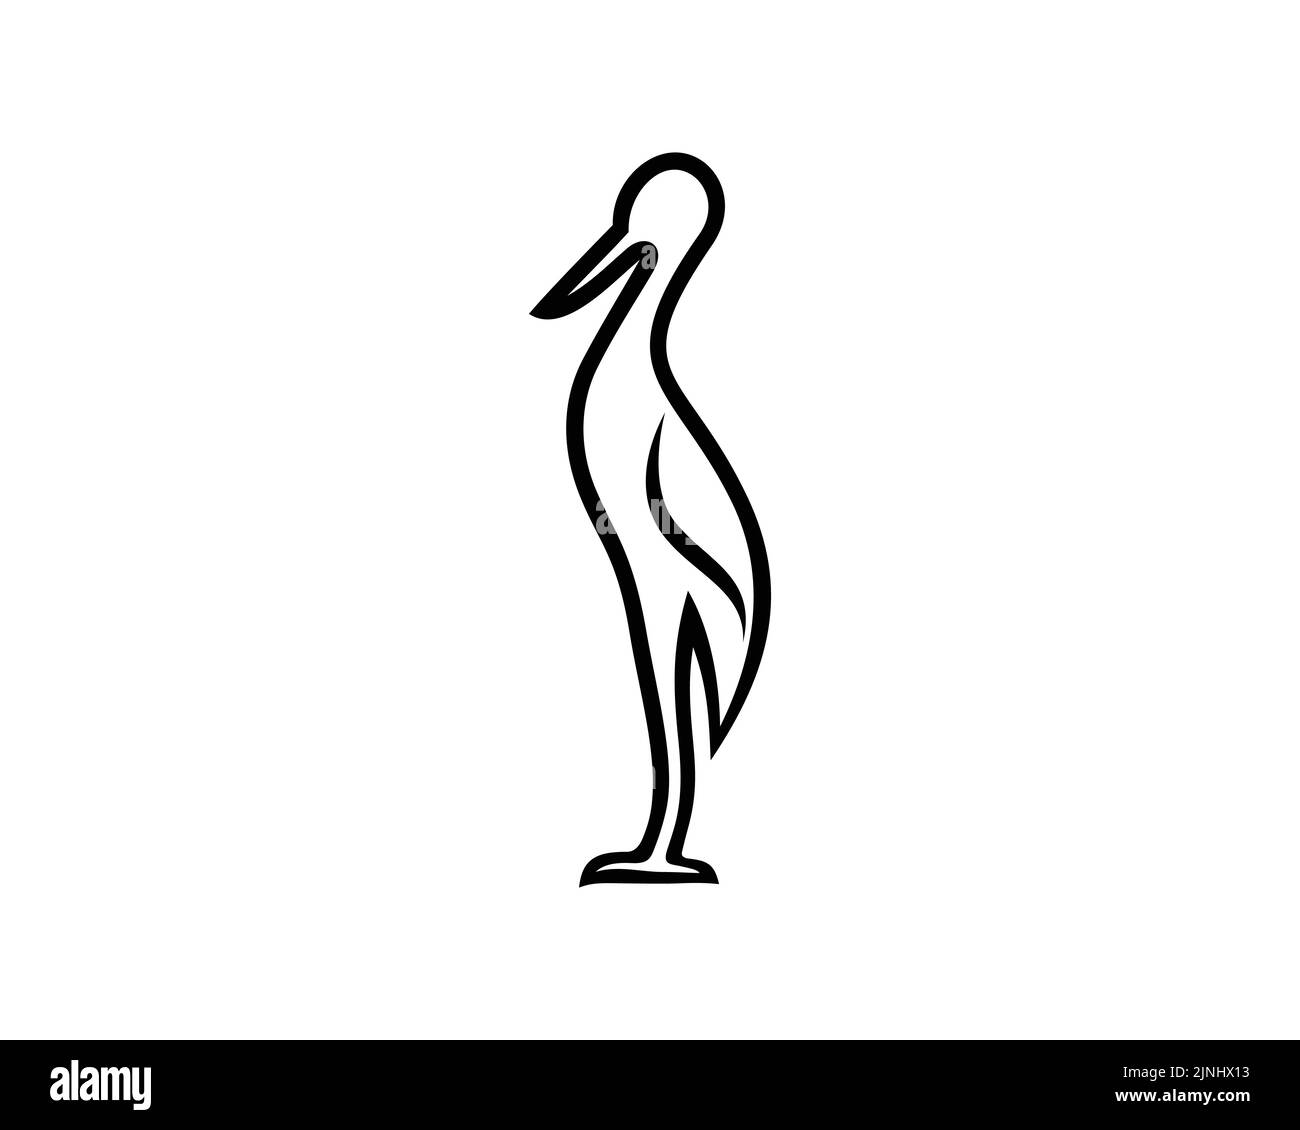 Stork semplice con gesti in piedi visualizzati in stile Silhouette Illustrazione Vettoriale